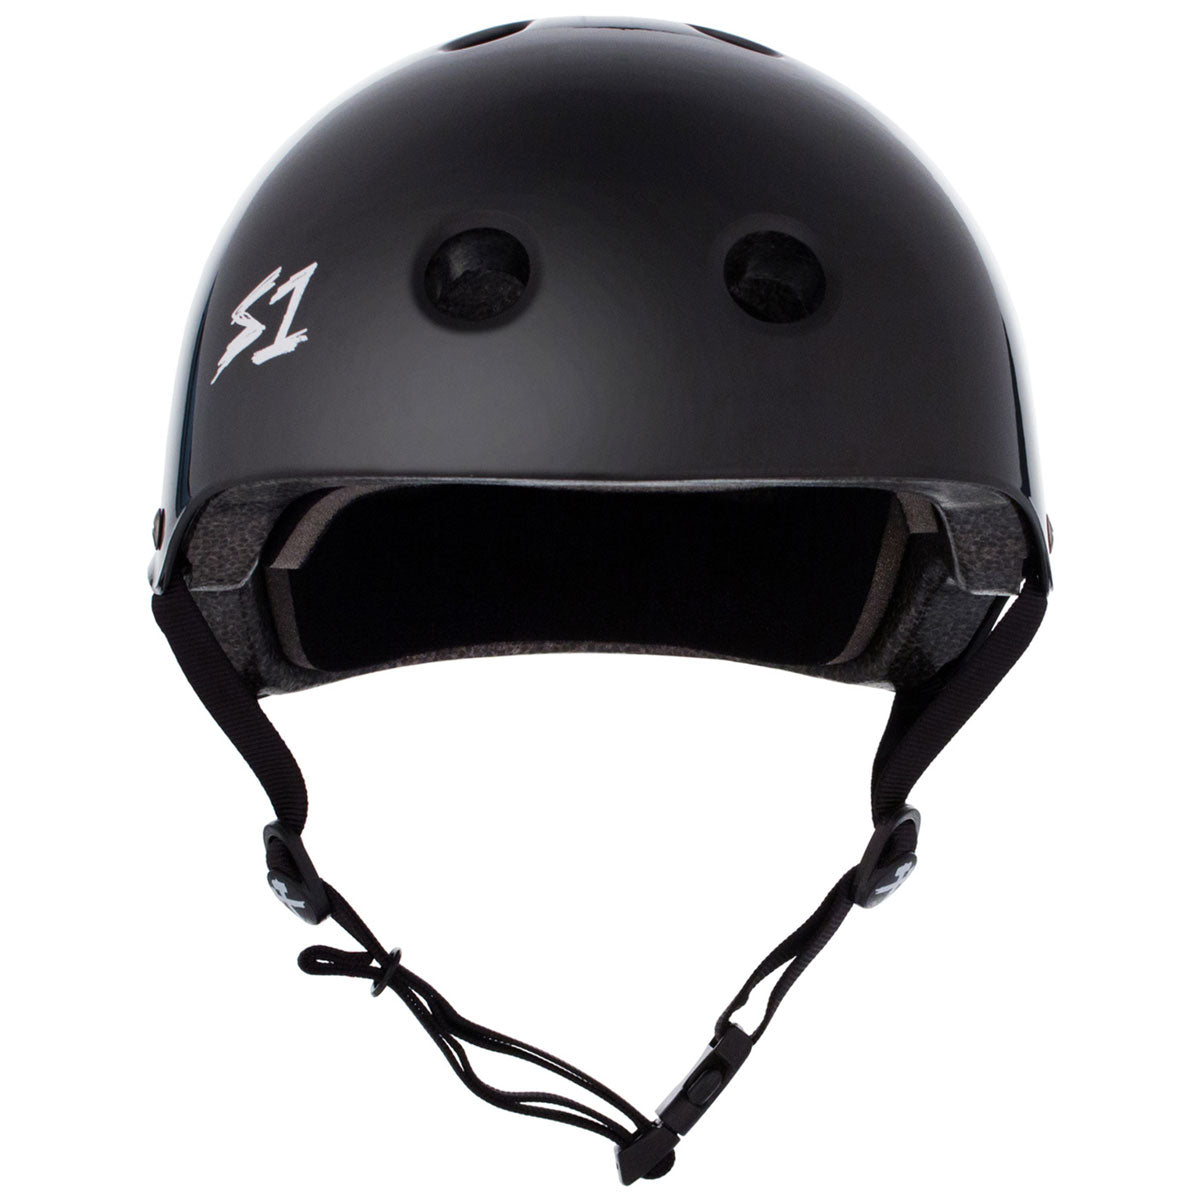 S-One Lifer Helmet - Black Gloss image 3